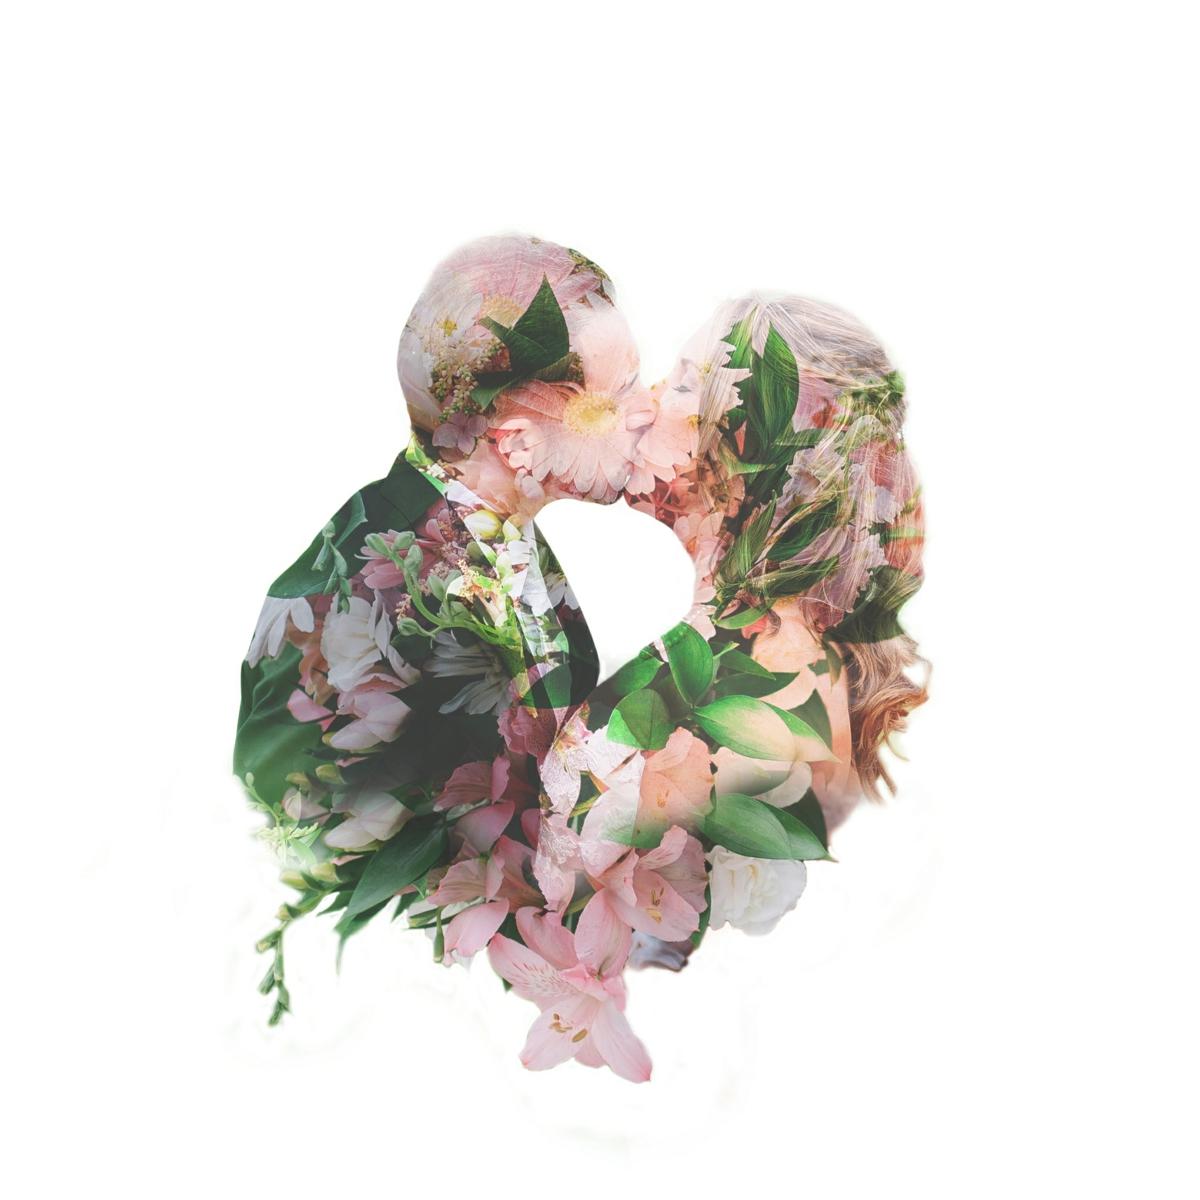 Mit dieser Doppelbelichtung wurde eine Herzform aus küssendem Paar und Blumen gestaltet